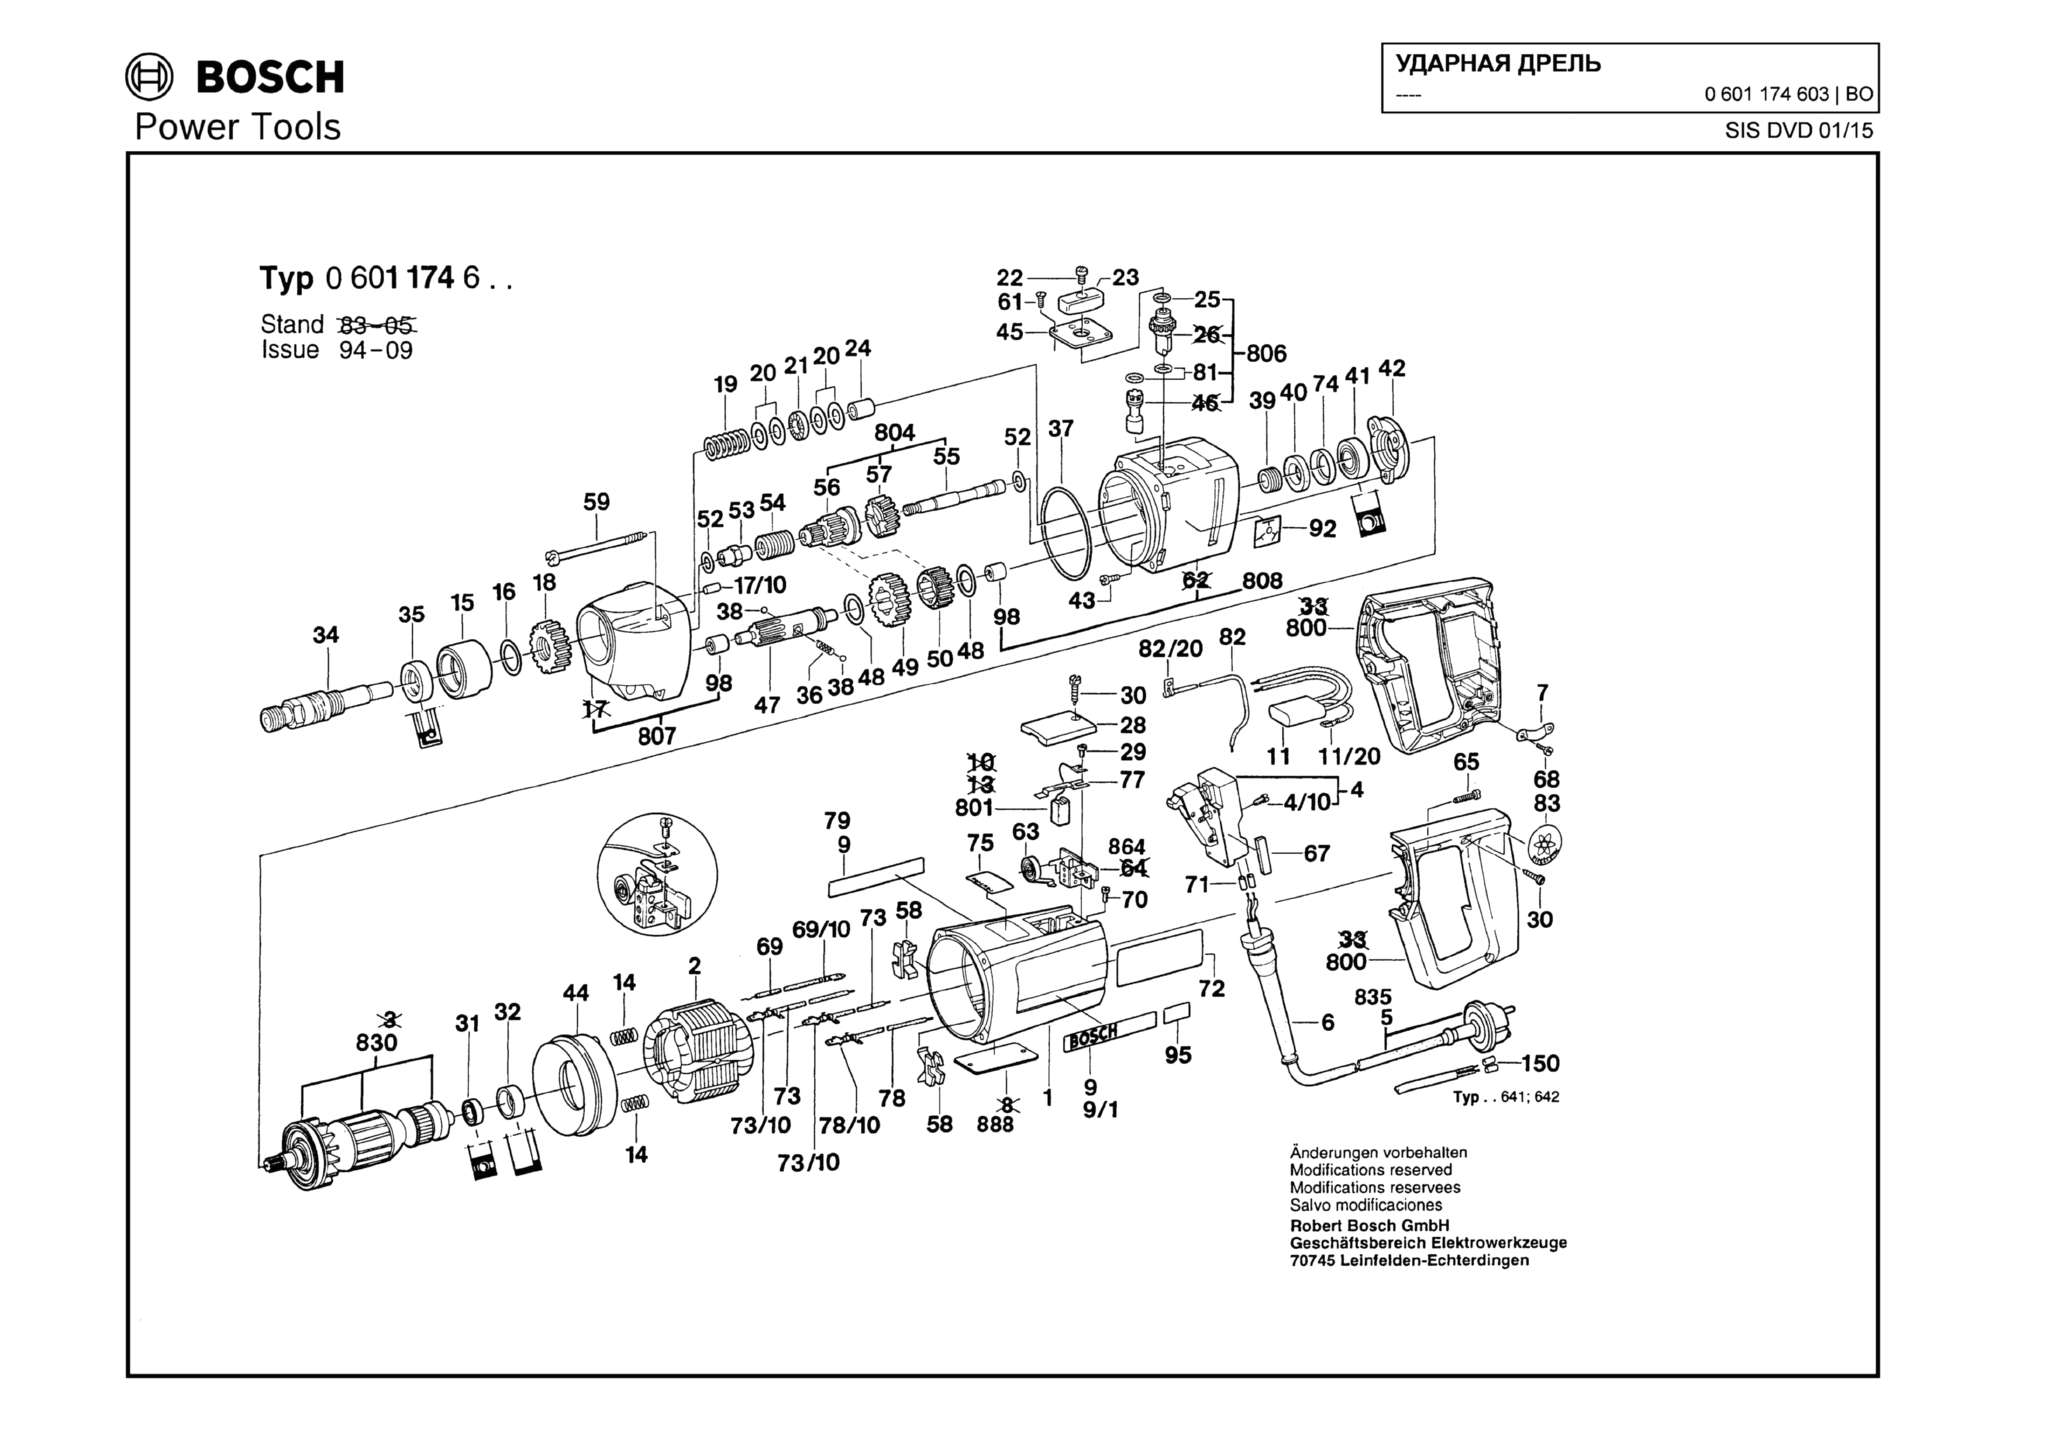 Запчасти, схема и деталировка Bosch (ТИП 0601174603)